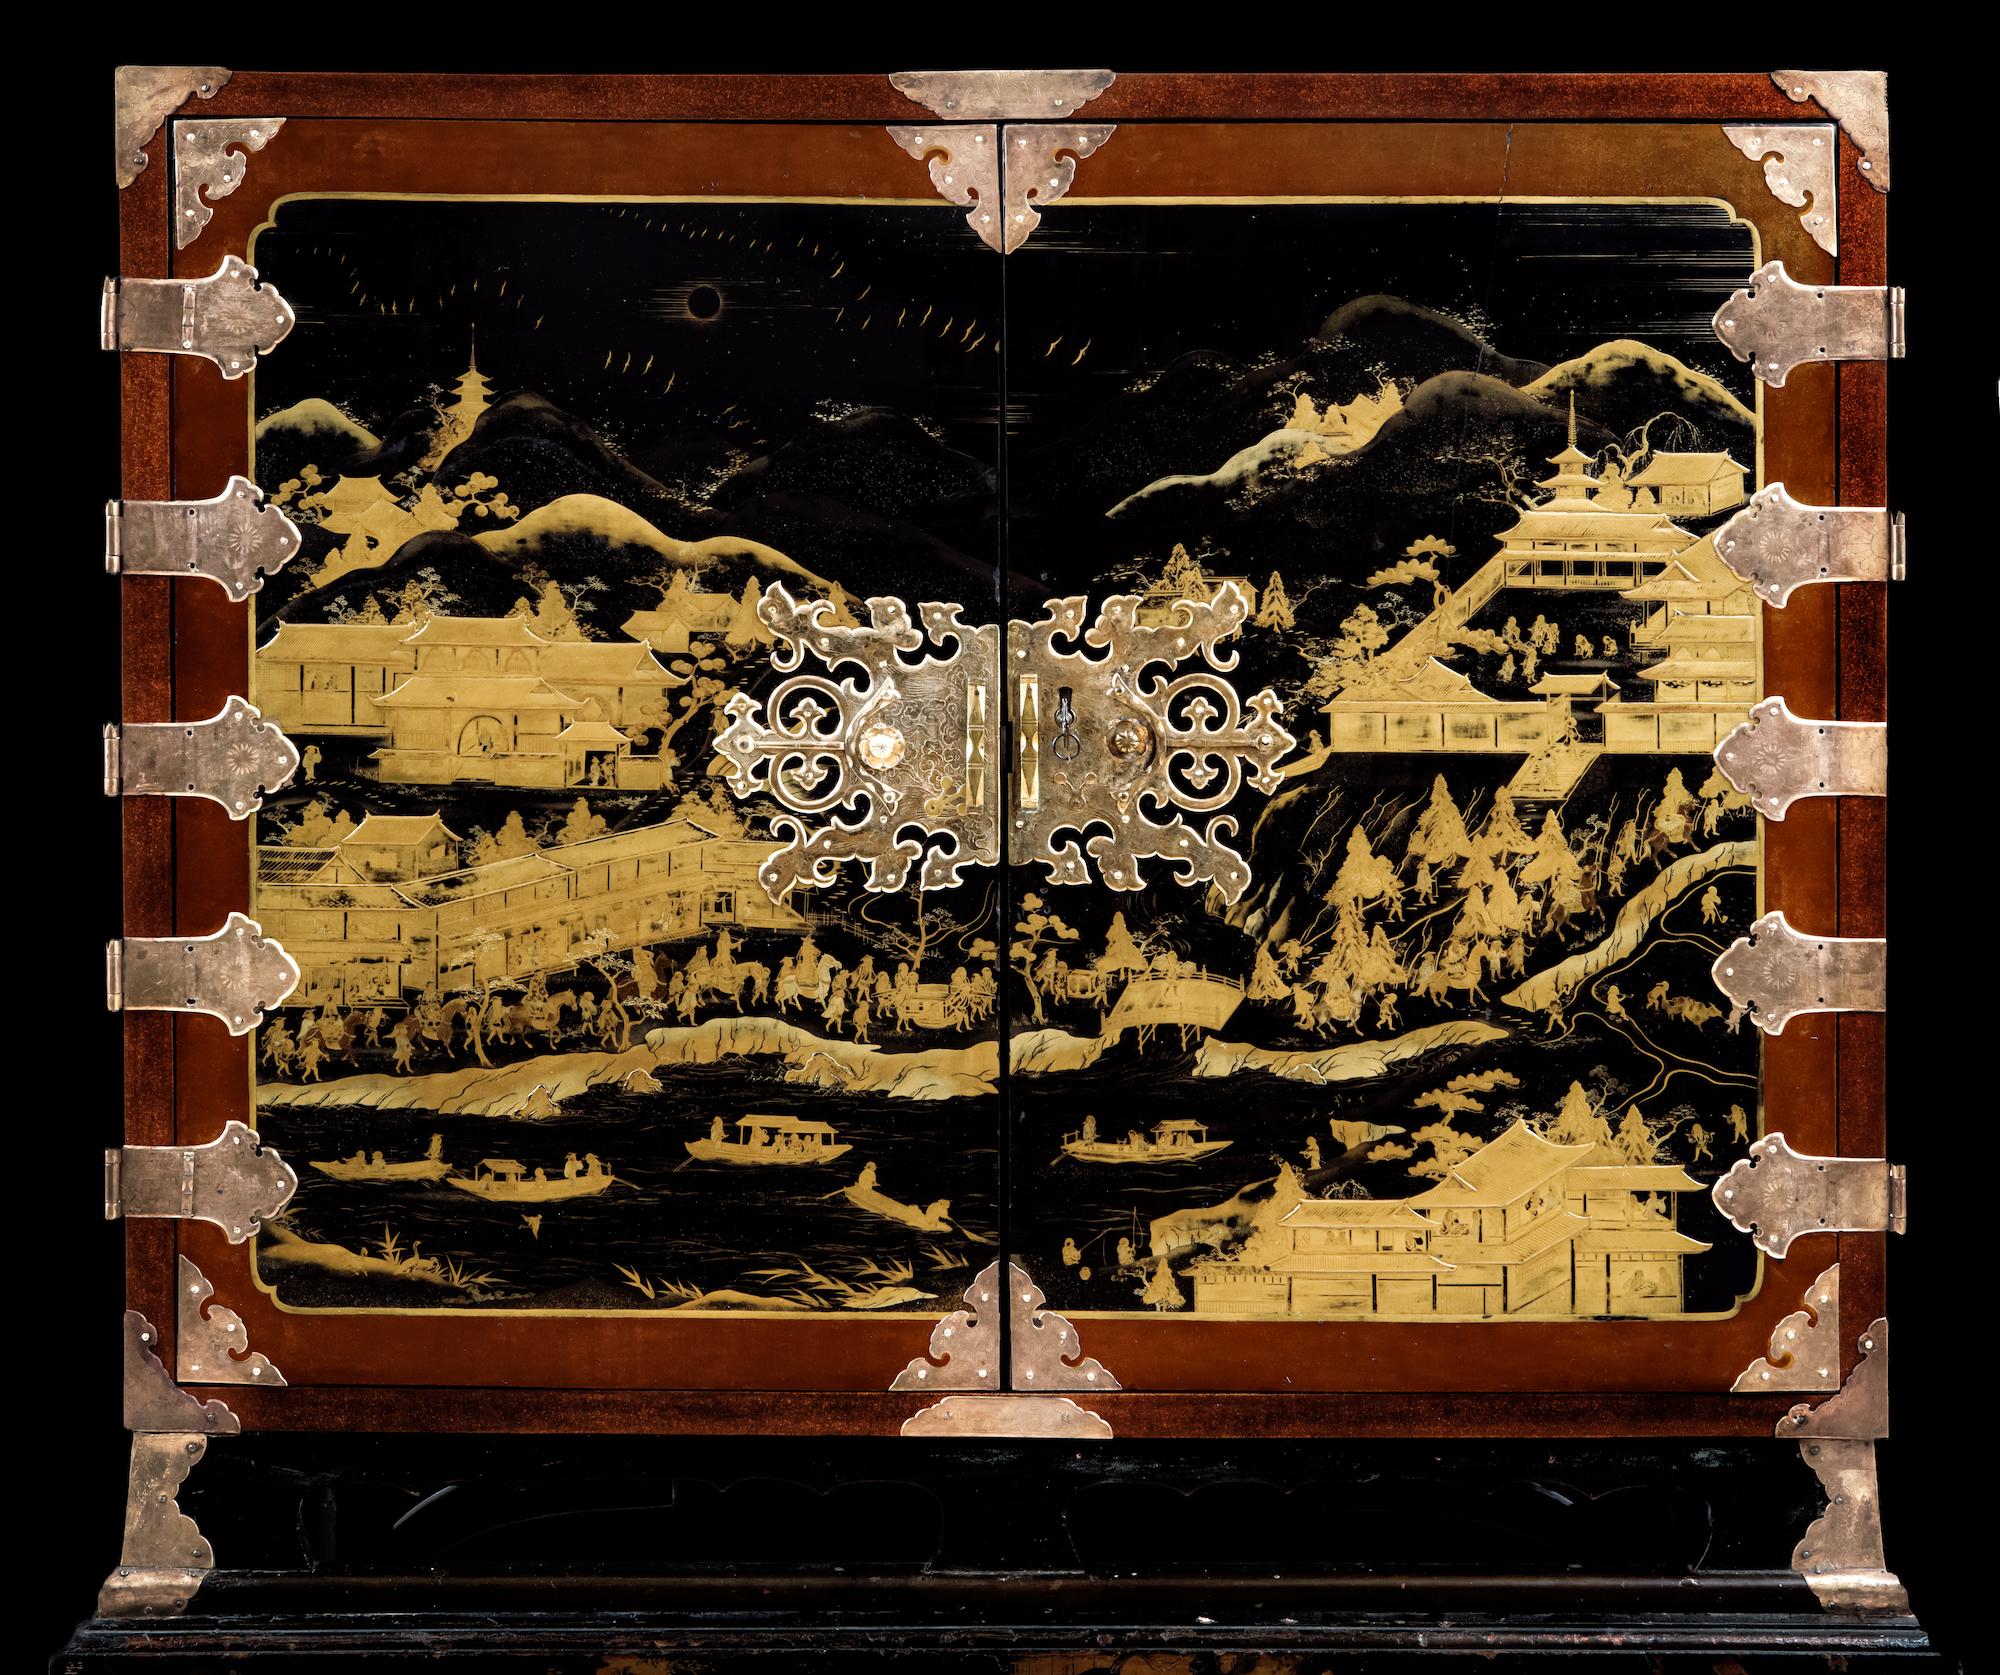 Laqué Cabinet en laque d'exportation japonaise du 17e siècle représentant le poste de commerce néerlandais en vente